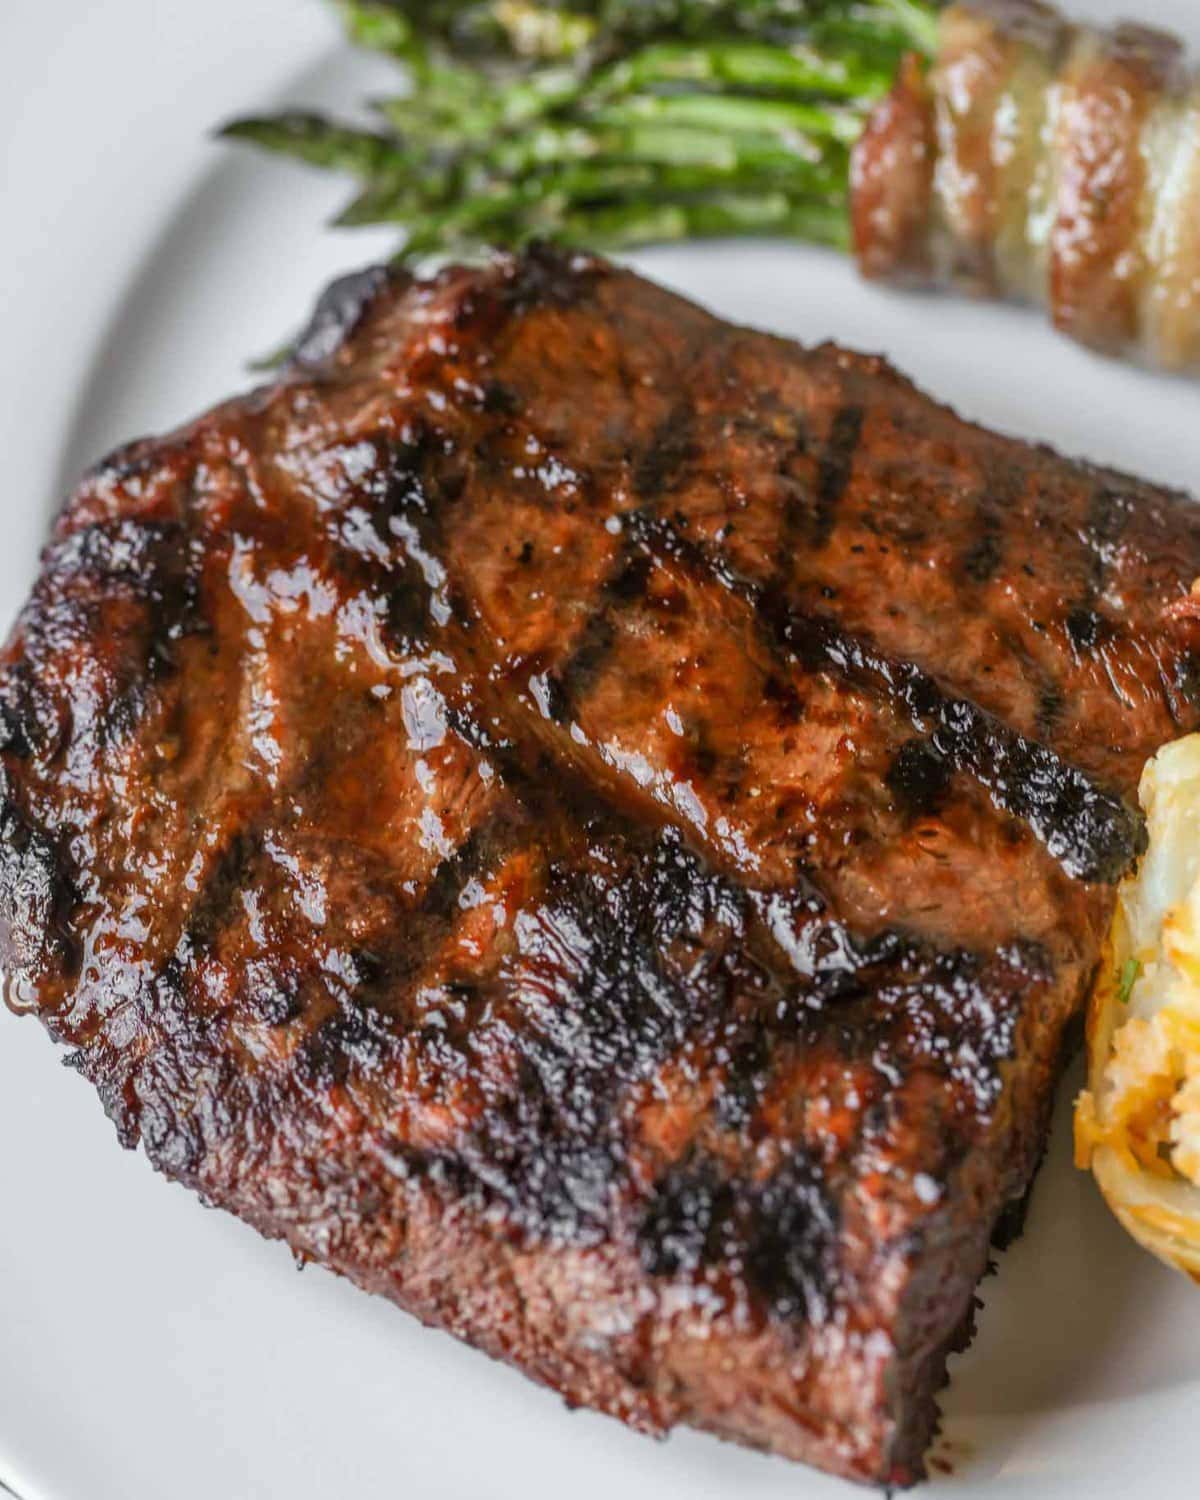 BBQ steak recipe ideas